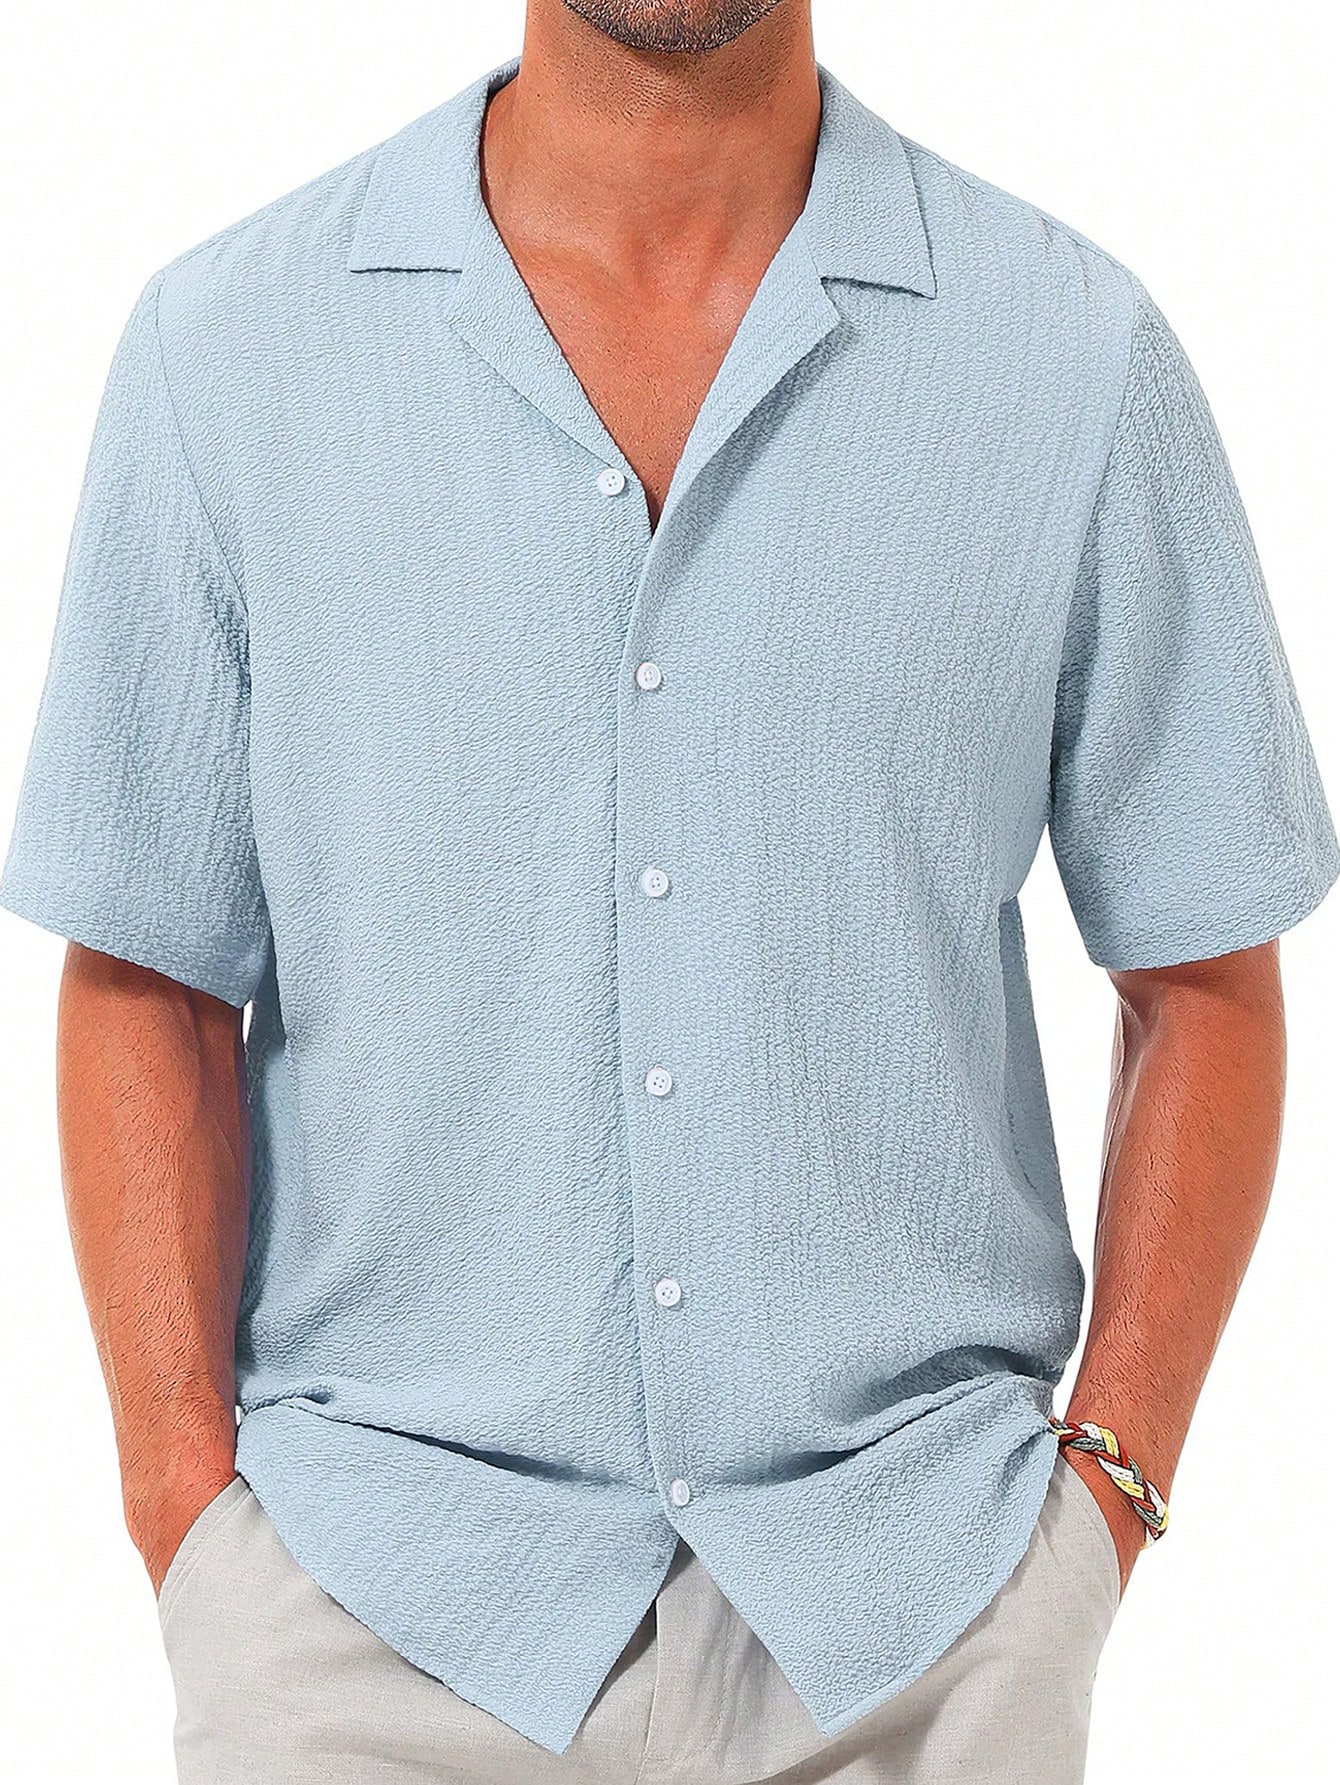 Мужская повседневная рубашка с коротким рукавом на пуговицах, синий мужская однотонная повседневная рубашка с коротким рукавом и воротником поло синий